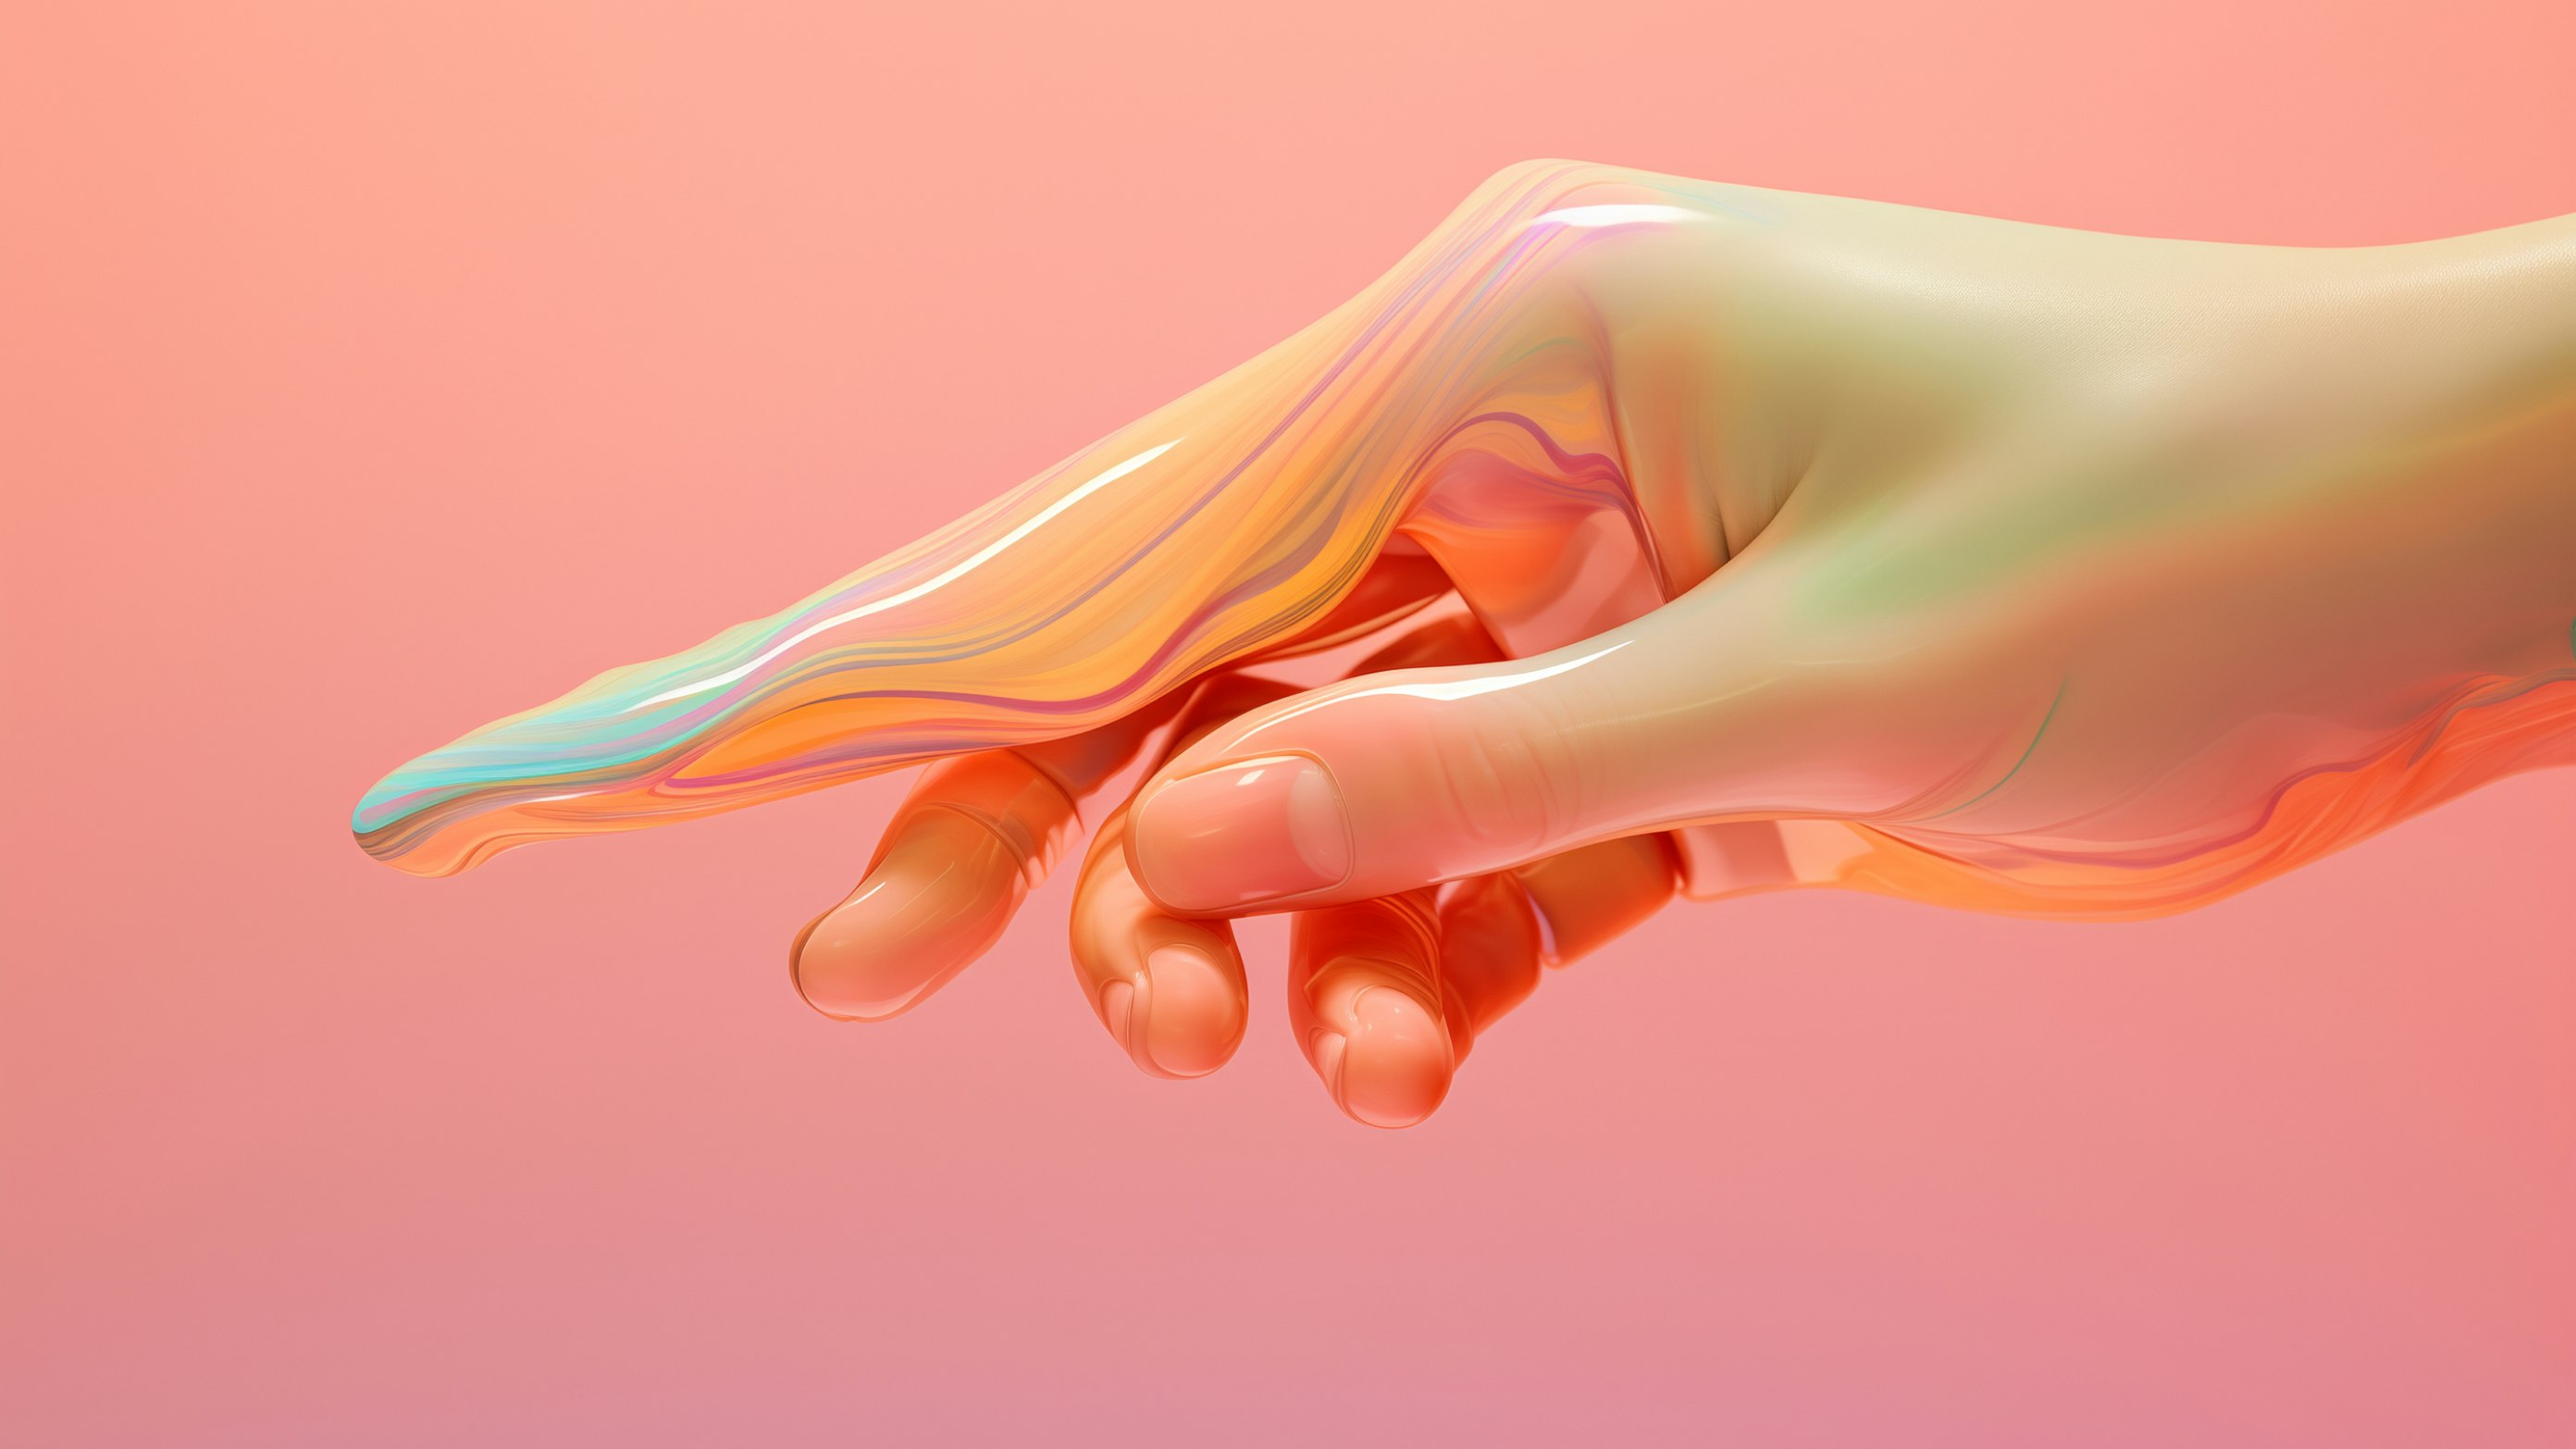 Render 3D generato con AI di una mano umanoide che si dissolve in un velo astratto semitrasparente e lucido dai toni rosa-verde